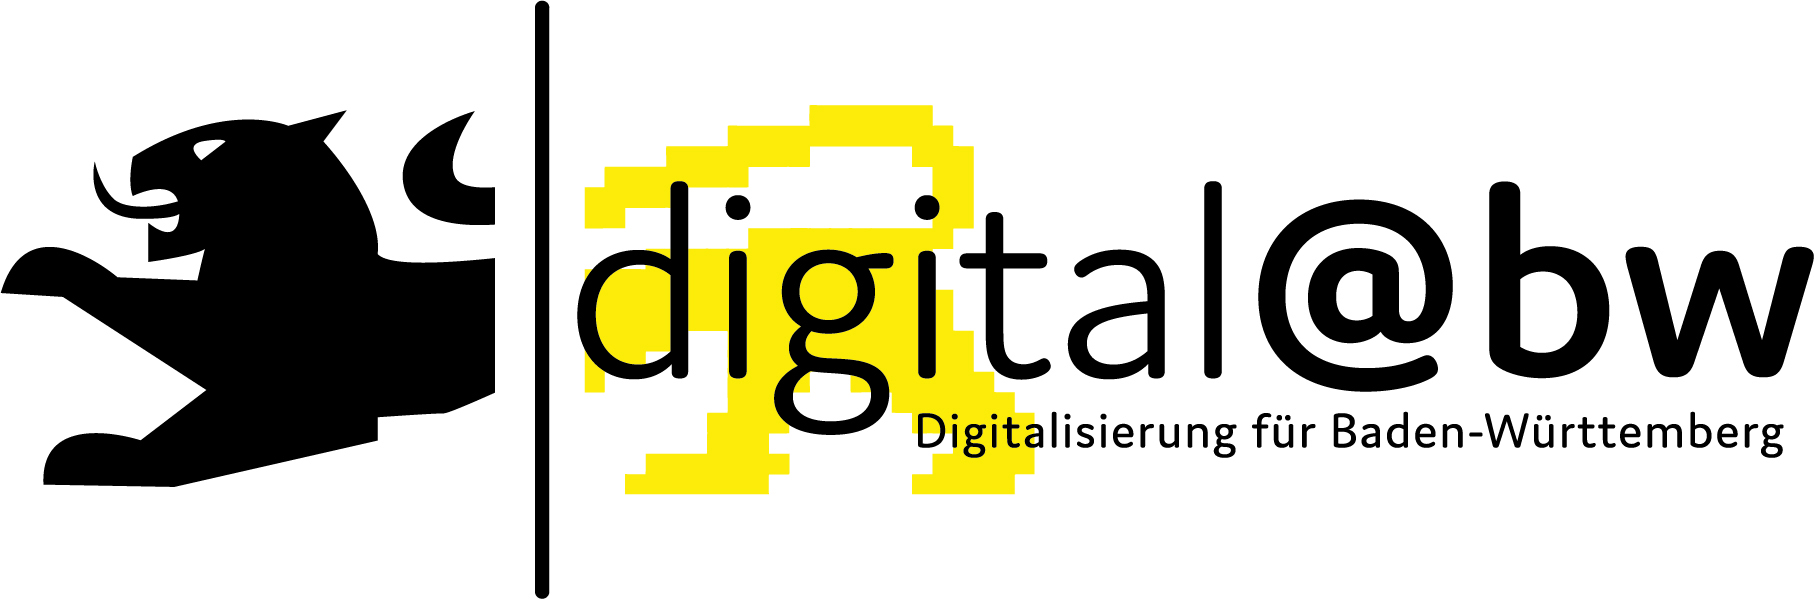 Logo der digital@bw